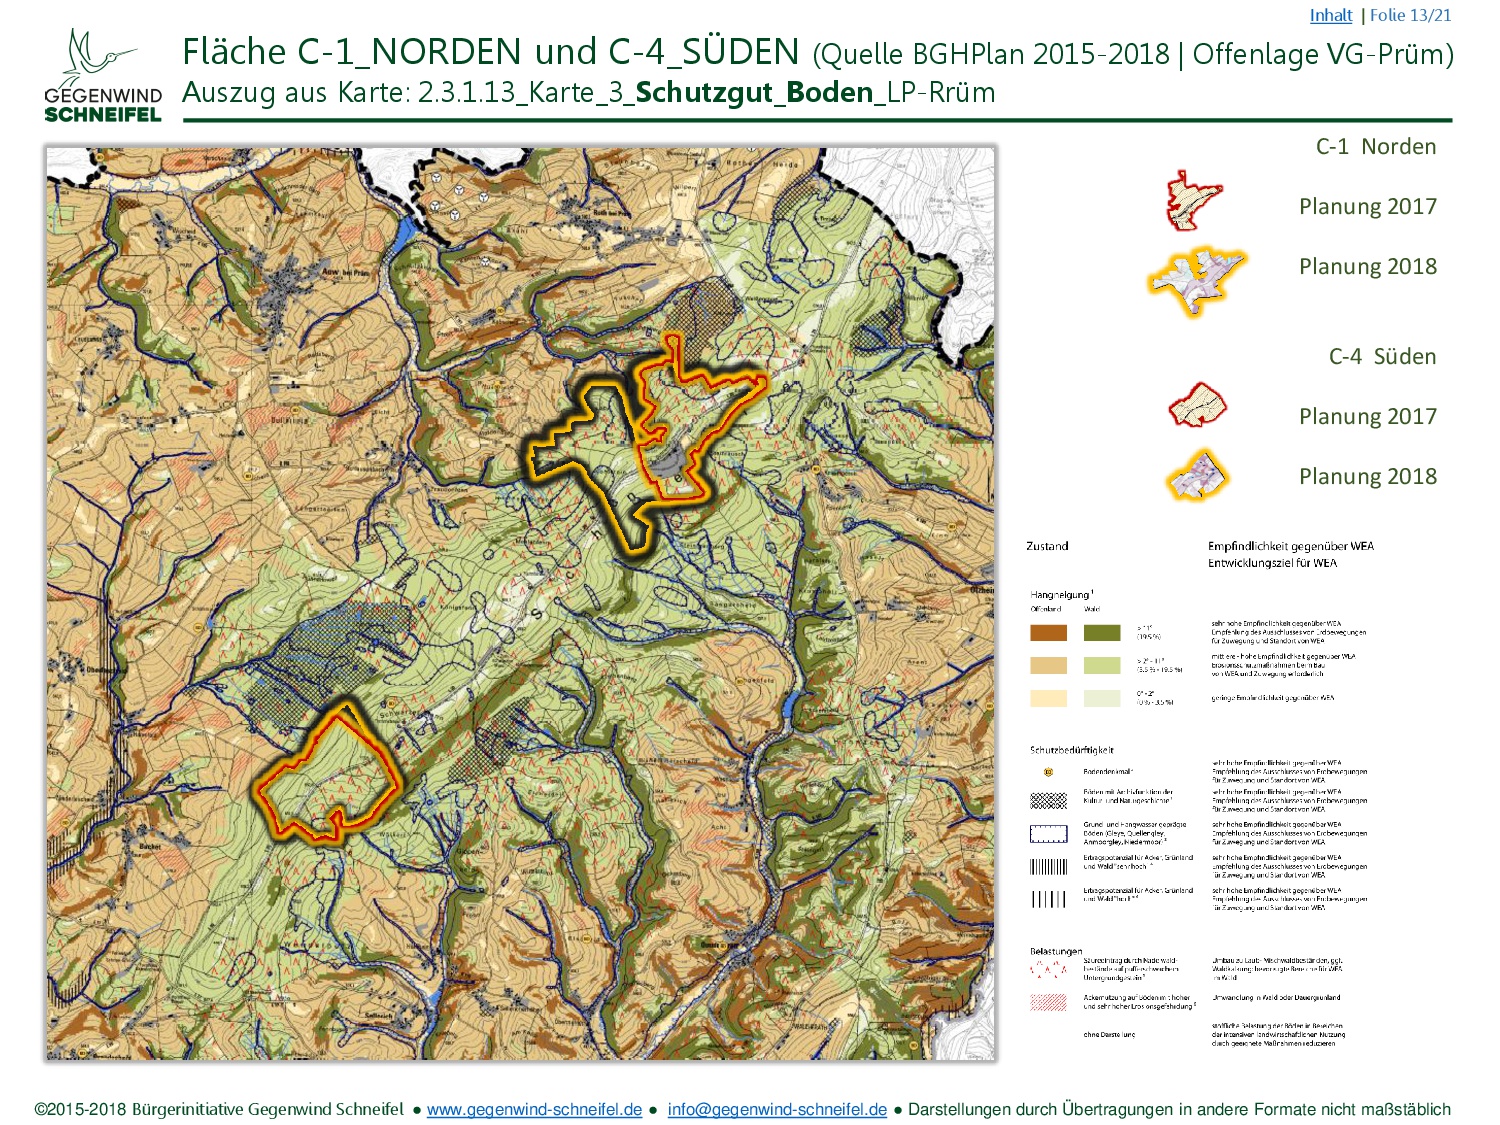 FNP Schneifel C1 C4 BiGWS C2018 (13 22) (Karte 3 Schutzgut Boden)